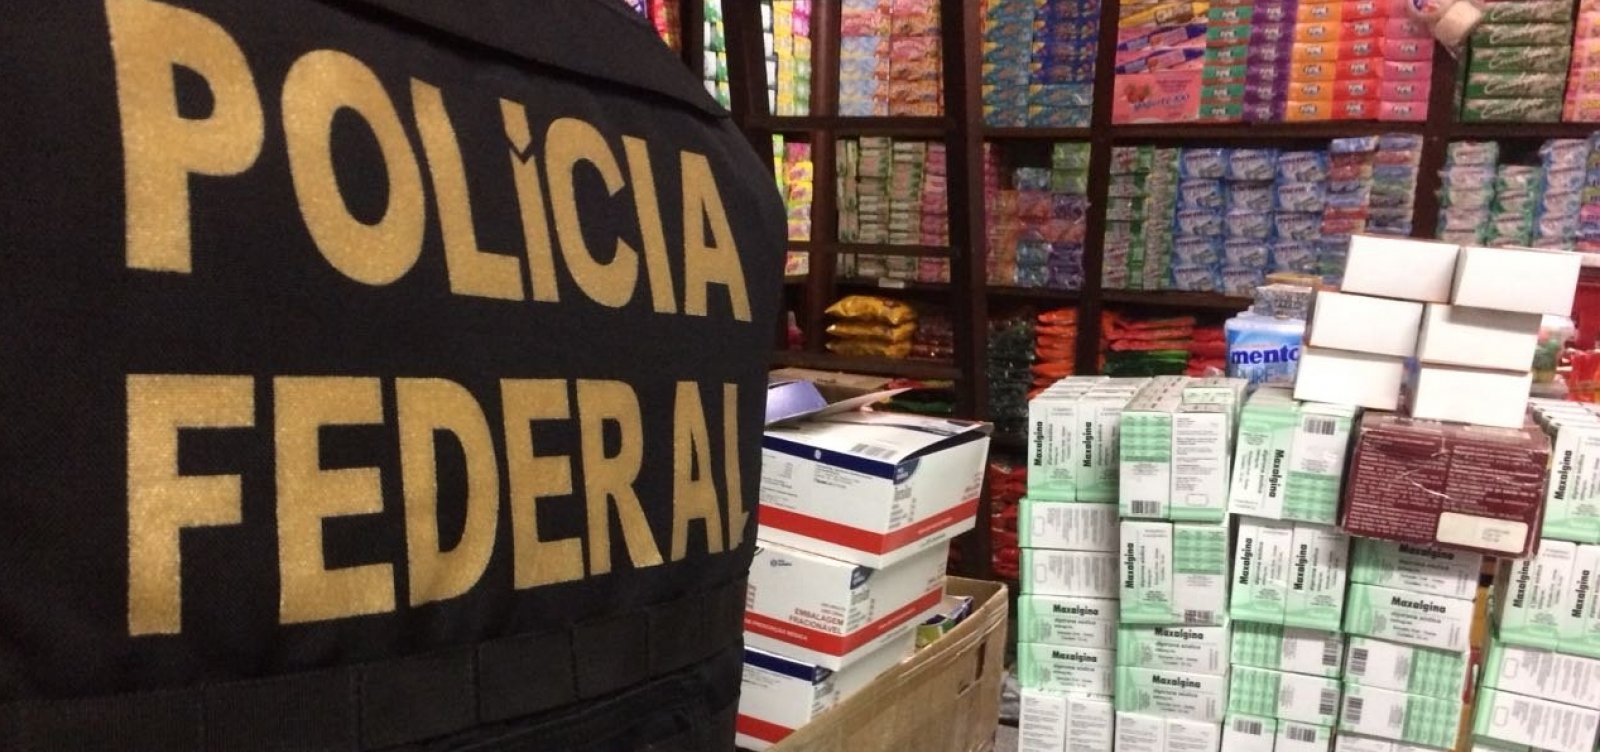 Polícia Federal faz operação contra contrabando na Feira de São Joaquim